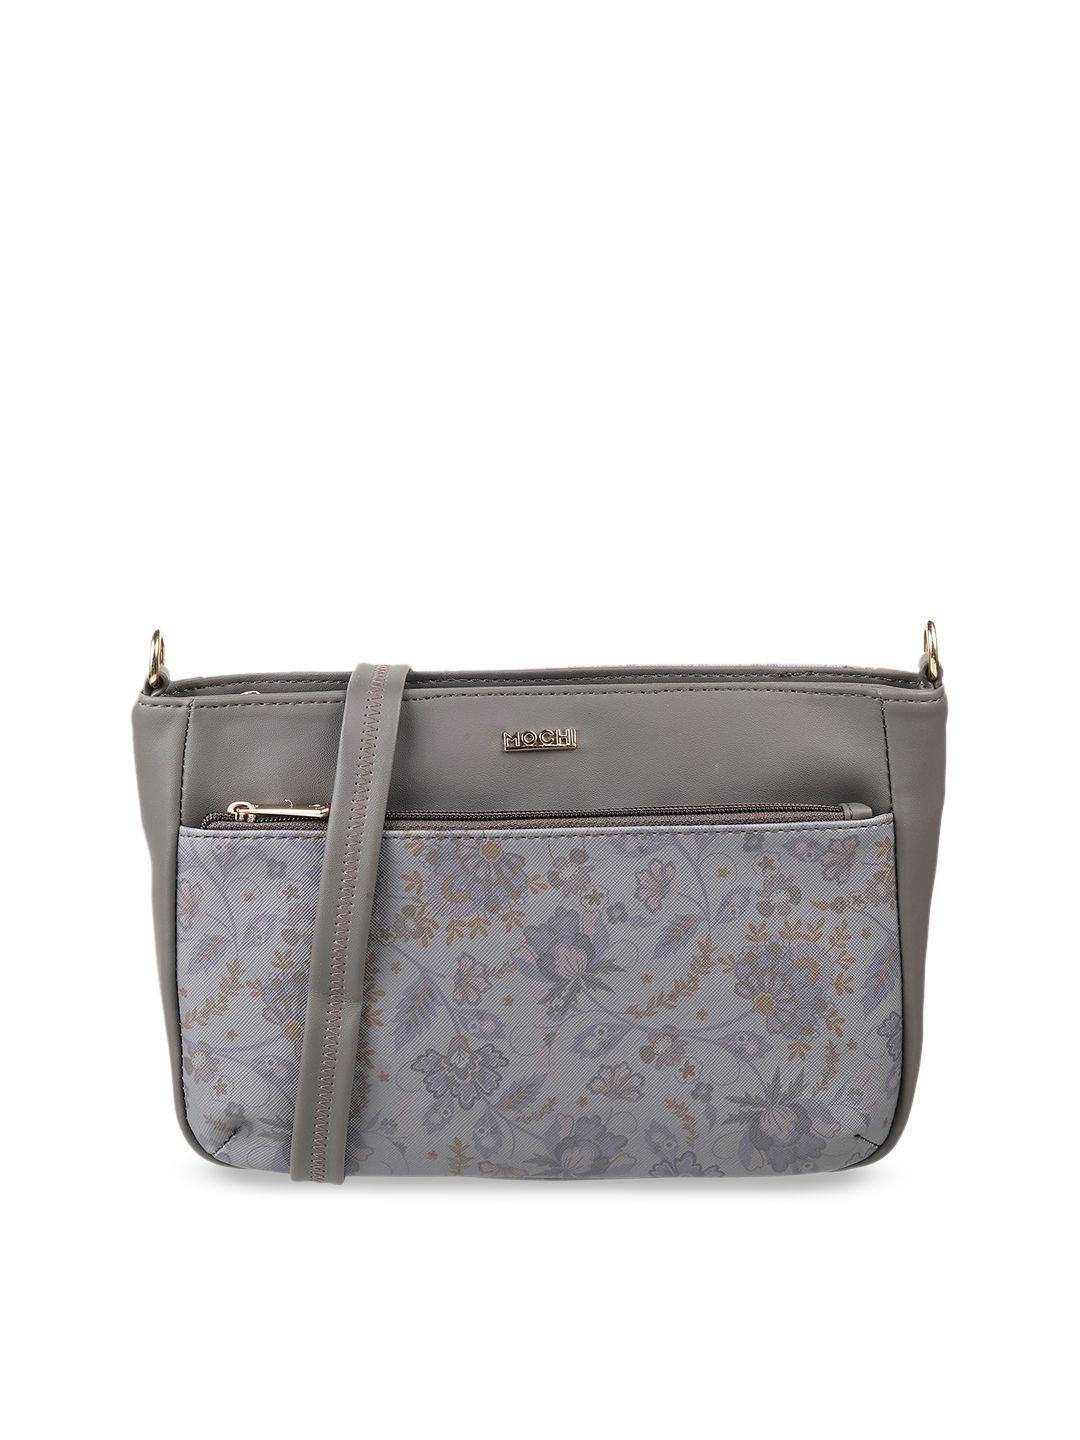 mochi grey floral printed structured sling bag